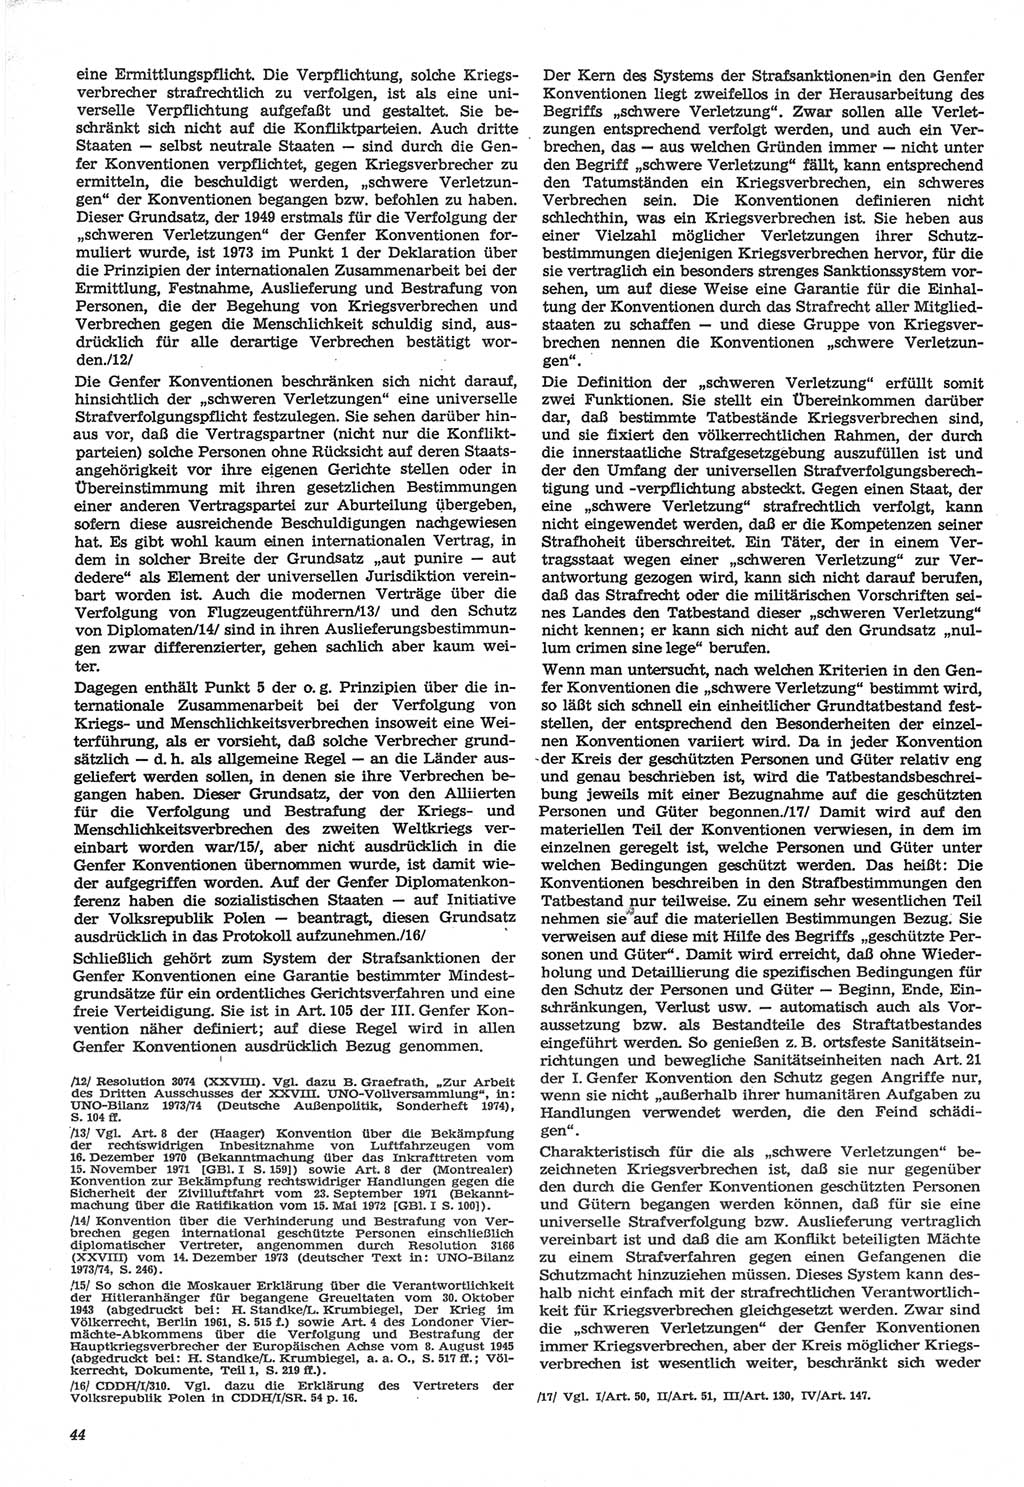 Neue Justiz (NJ), Zeitschrift für Recht und Rechtswissenschaft-Zeitschrift, sozialistisches Recht und Gesetzlichkeit, 31. Jahrgang 1977, Seite 44 (NJ DDR 1977, S. 44)